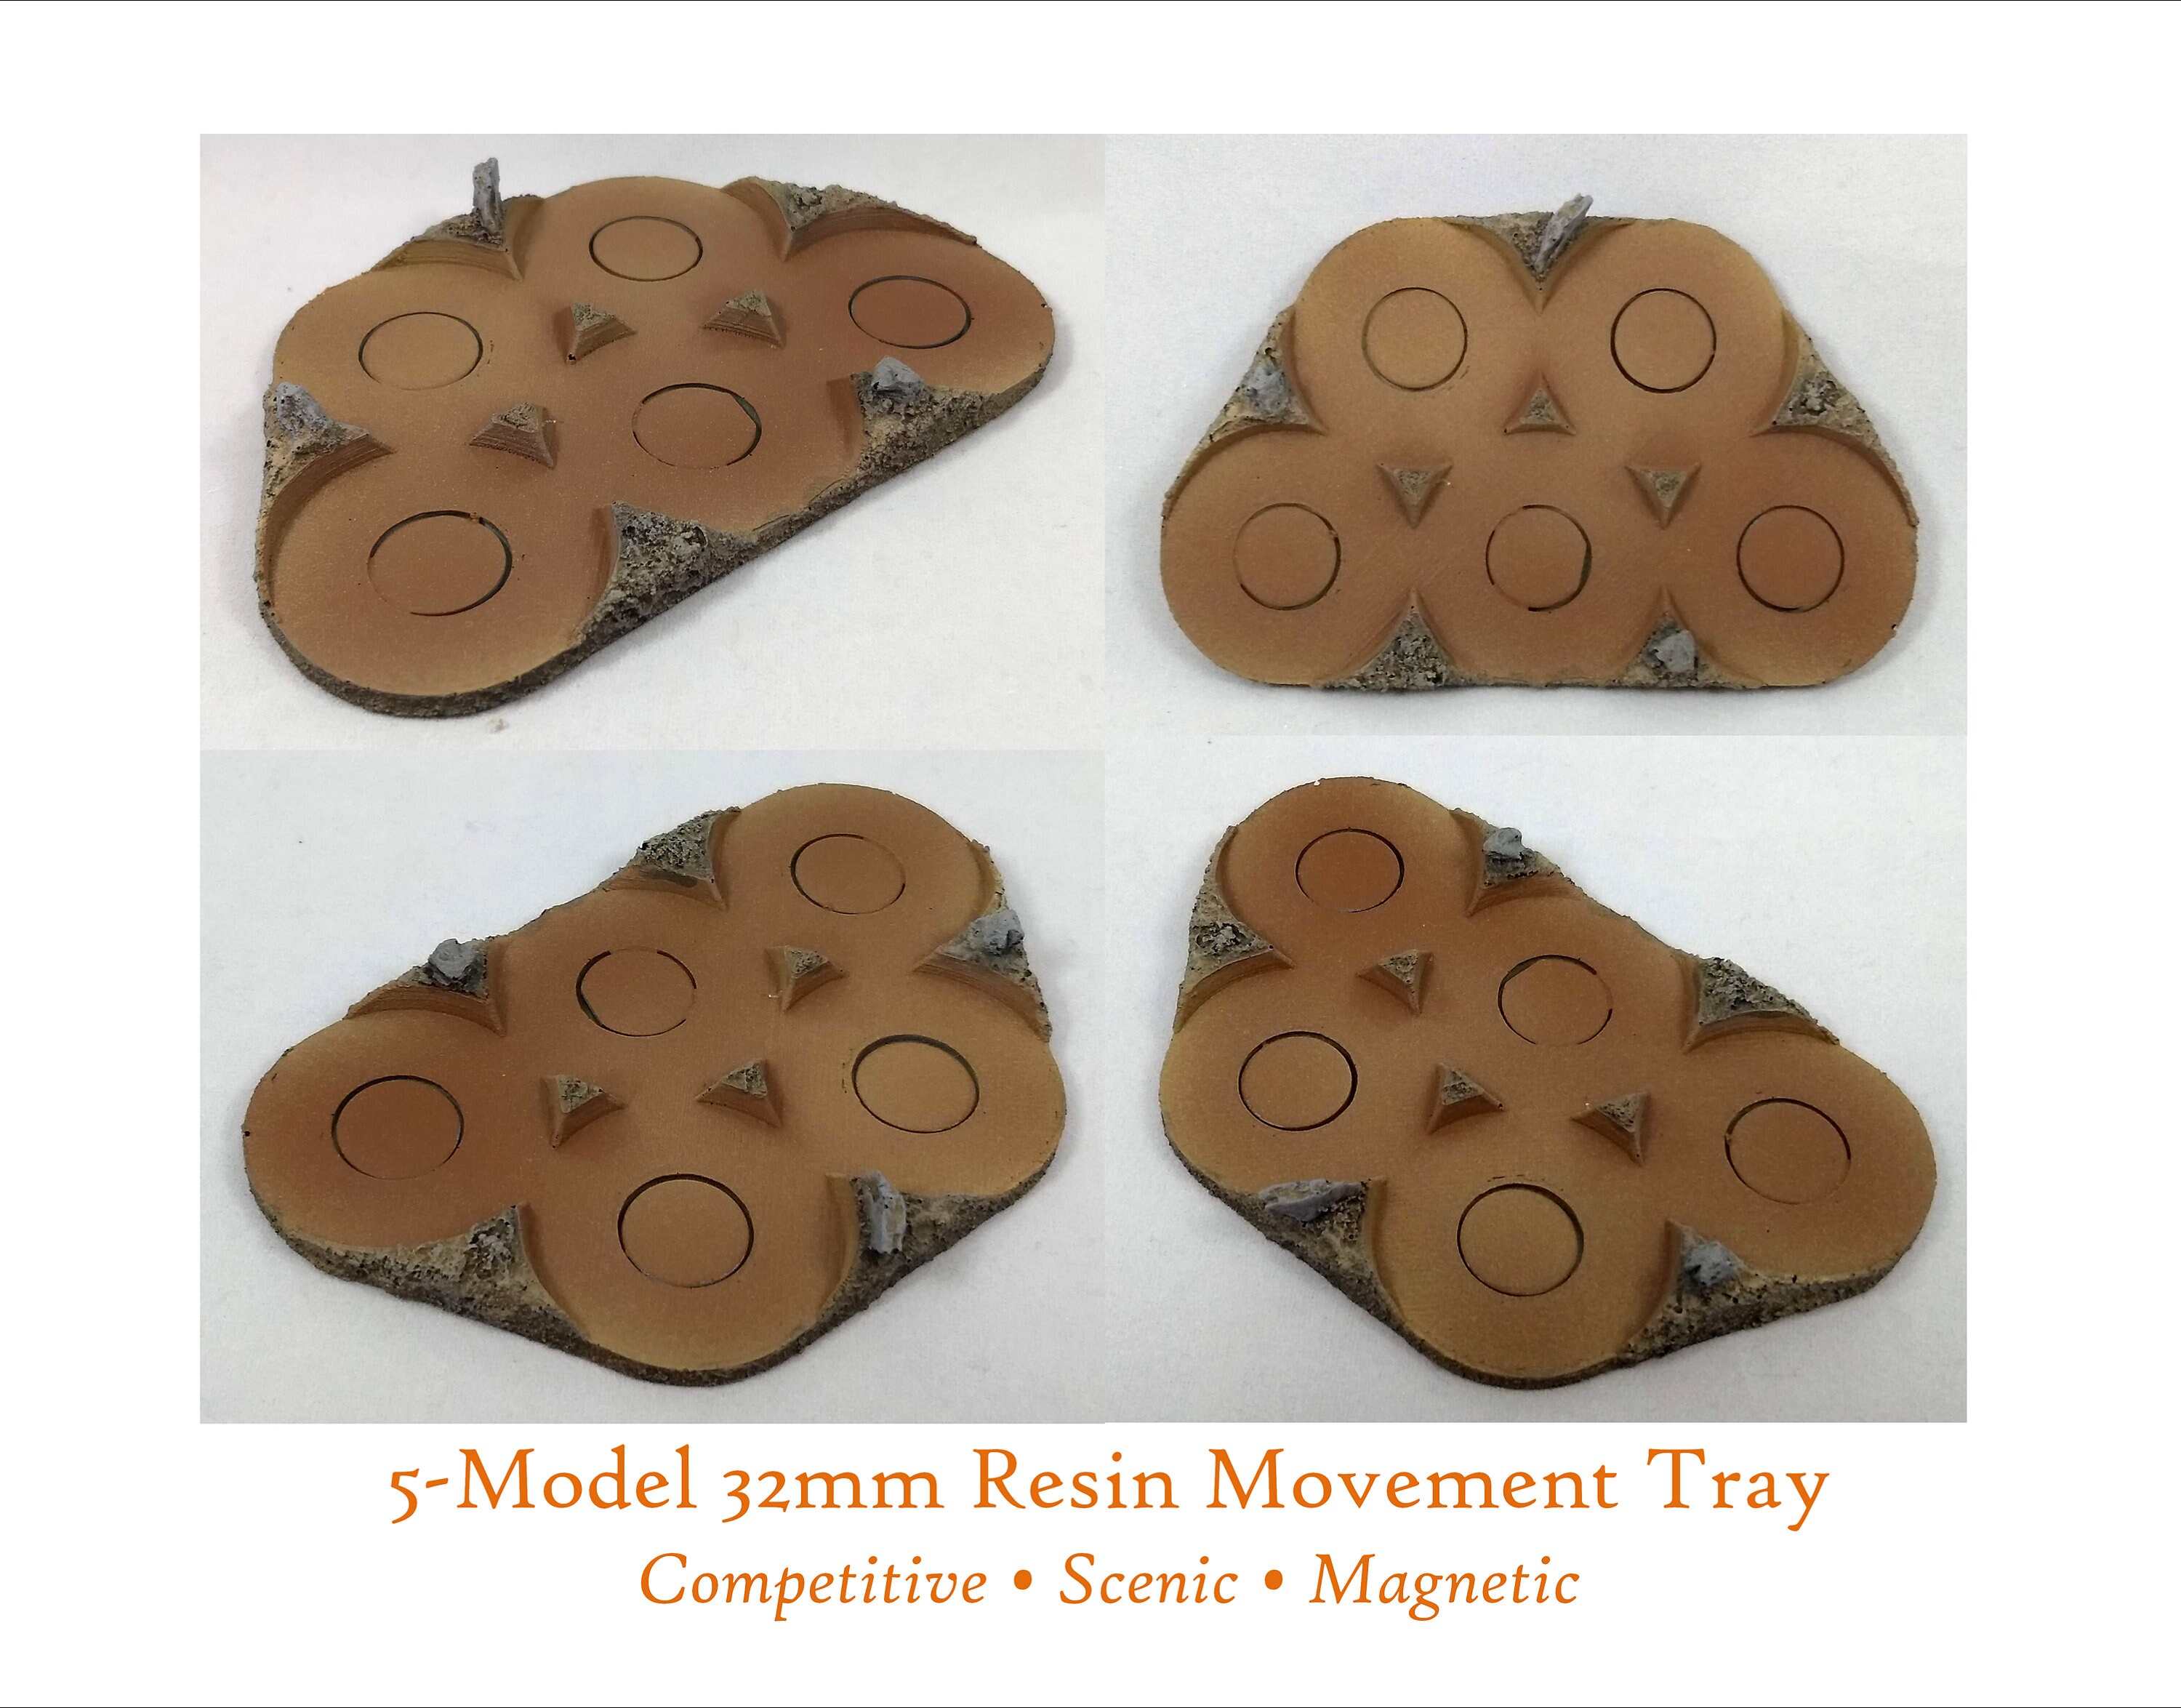 oxiderer skille sig ud Læge 32mm 5-model Round Base Competitive Scenic Magnetic Movement - Etsy